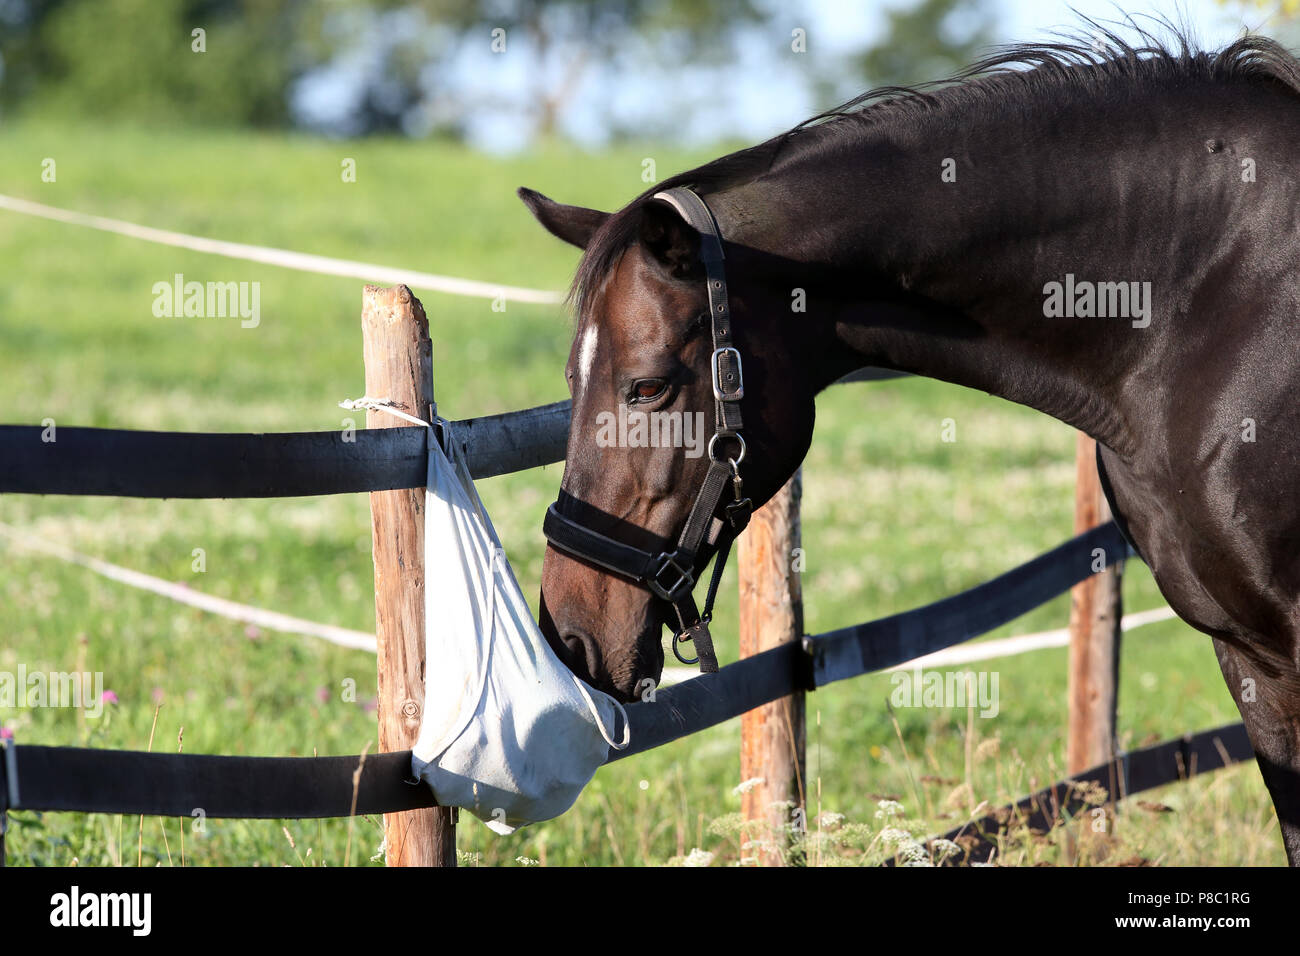 Gestuet Westerberg, cheval renifle curieusement sur le pâturage sur un sac de nettoyage Banque D'Images